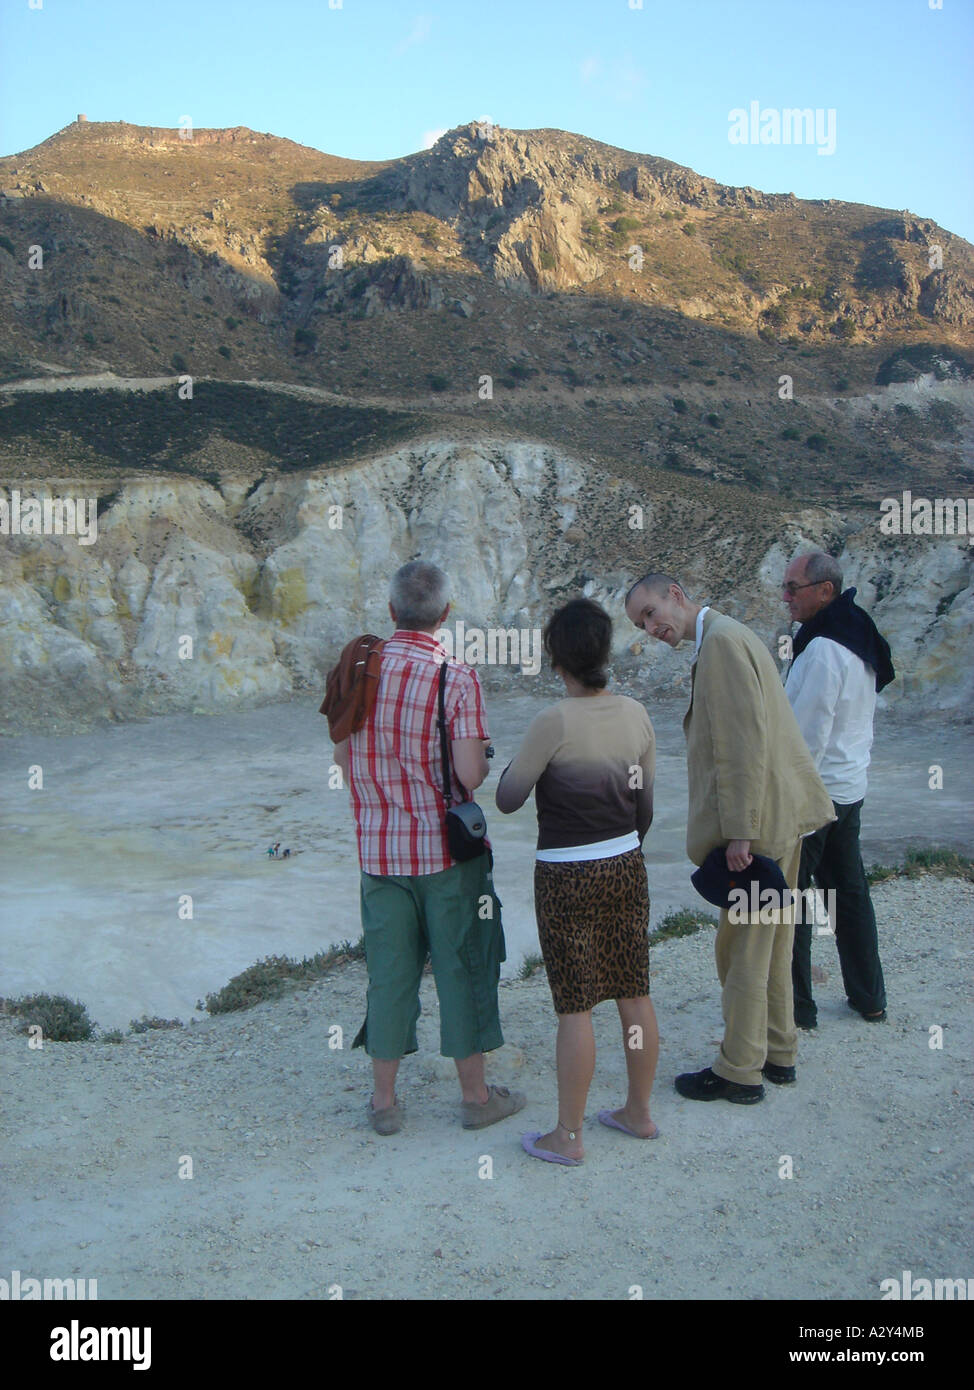 Turisti in cerca in corrispondenza del cratere del vulcano, Nissiros, Grecia, Luglio 2005 Foto Stock